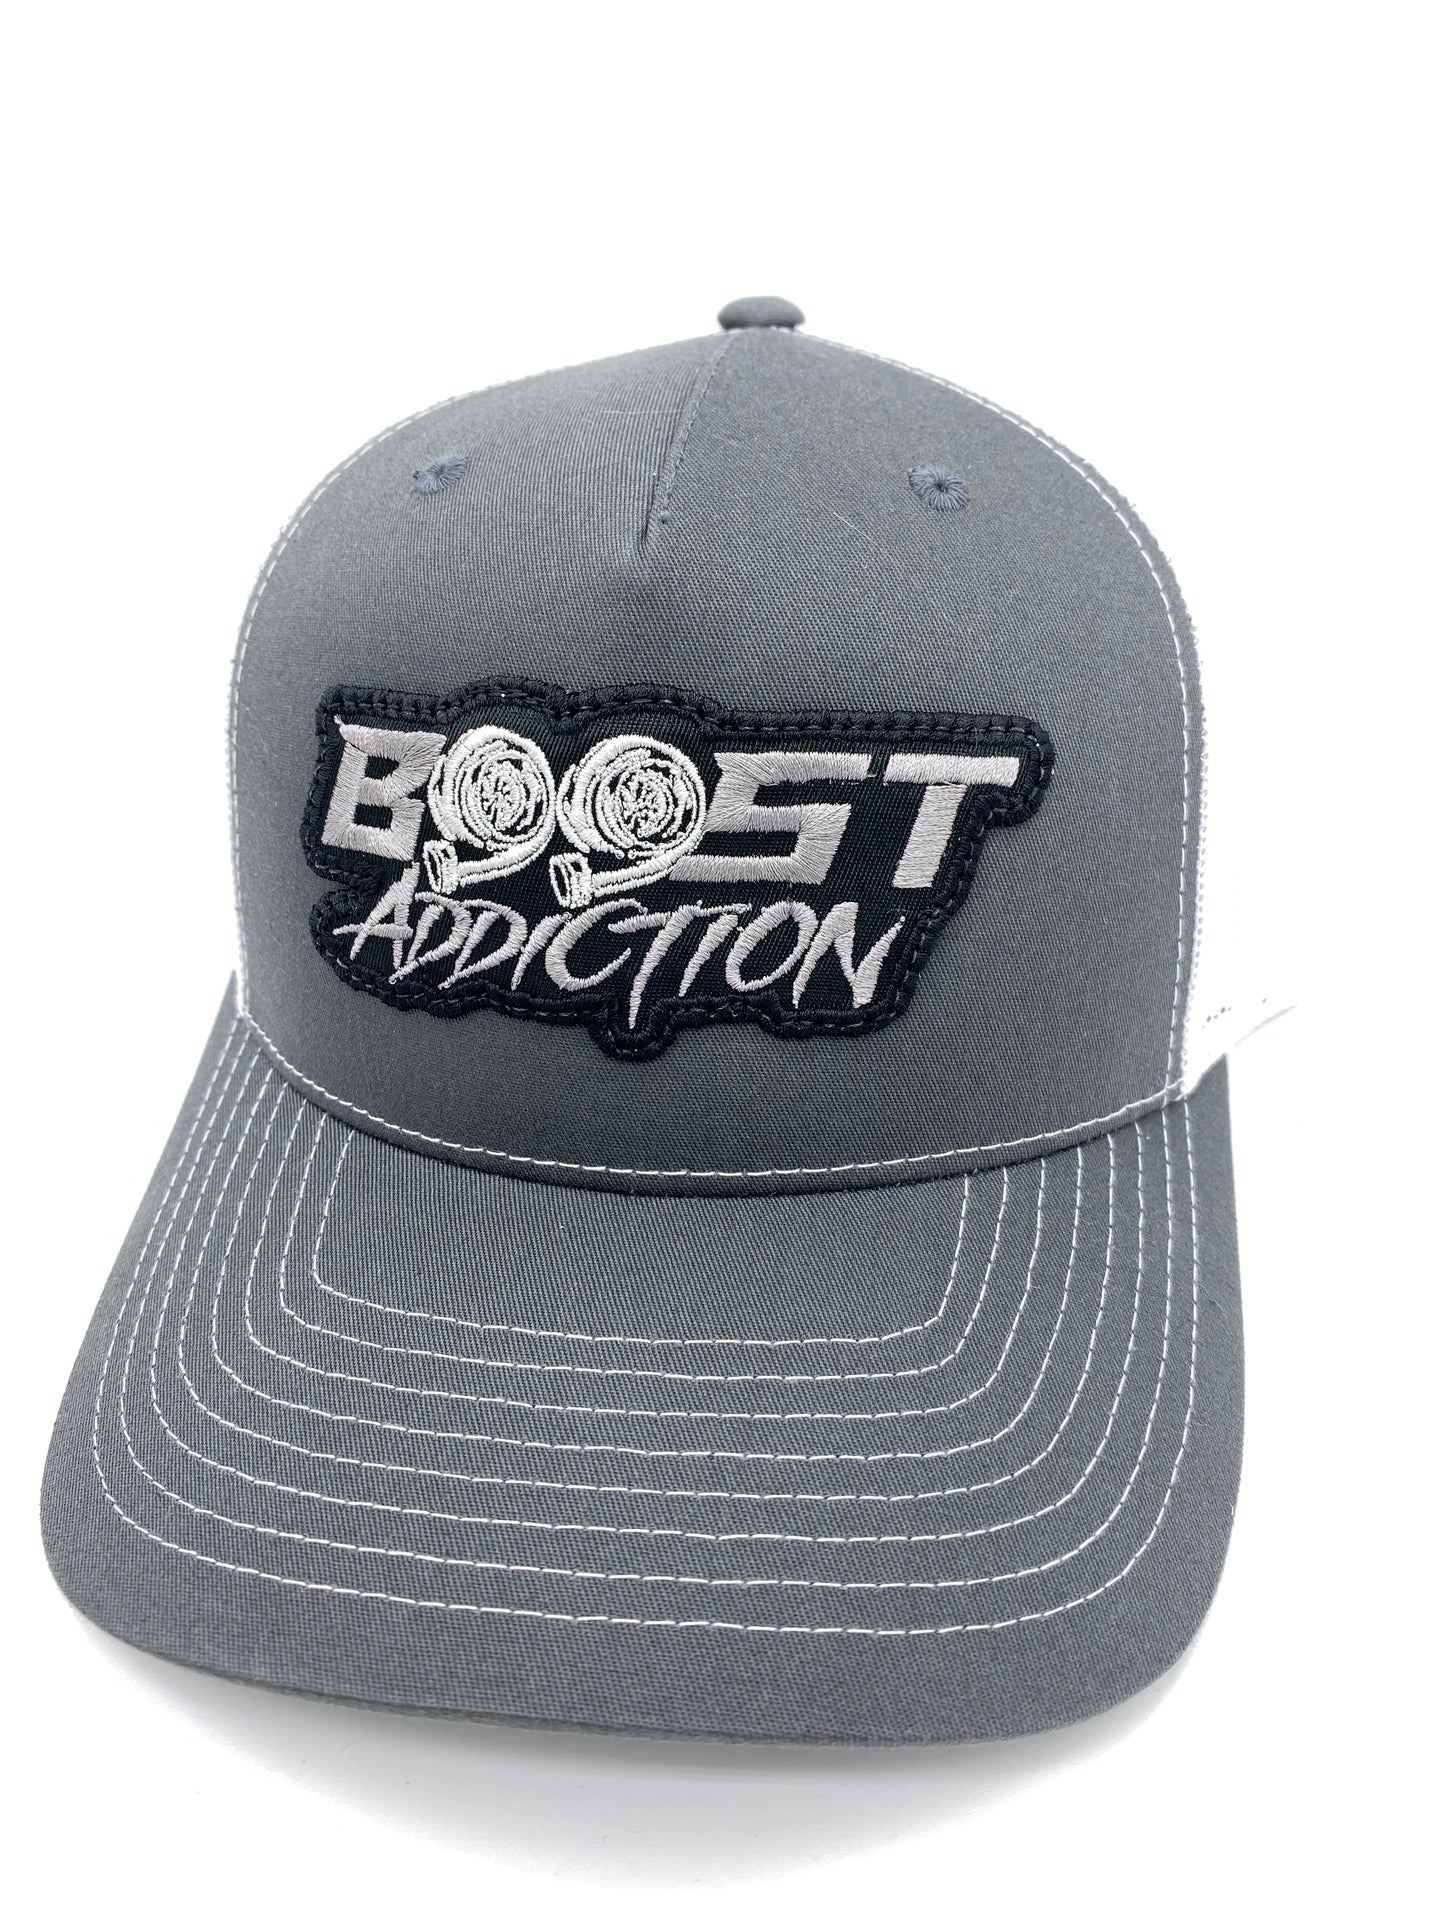 Boost Addiction hat